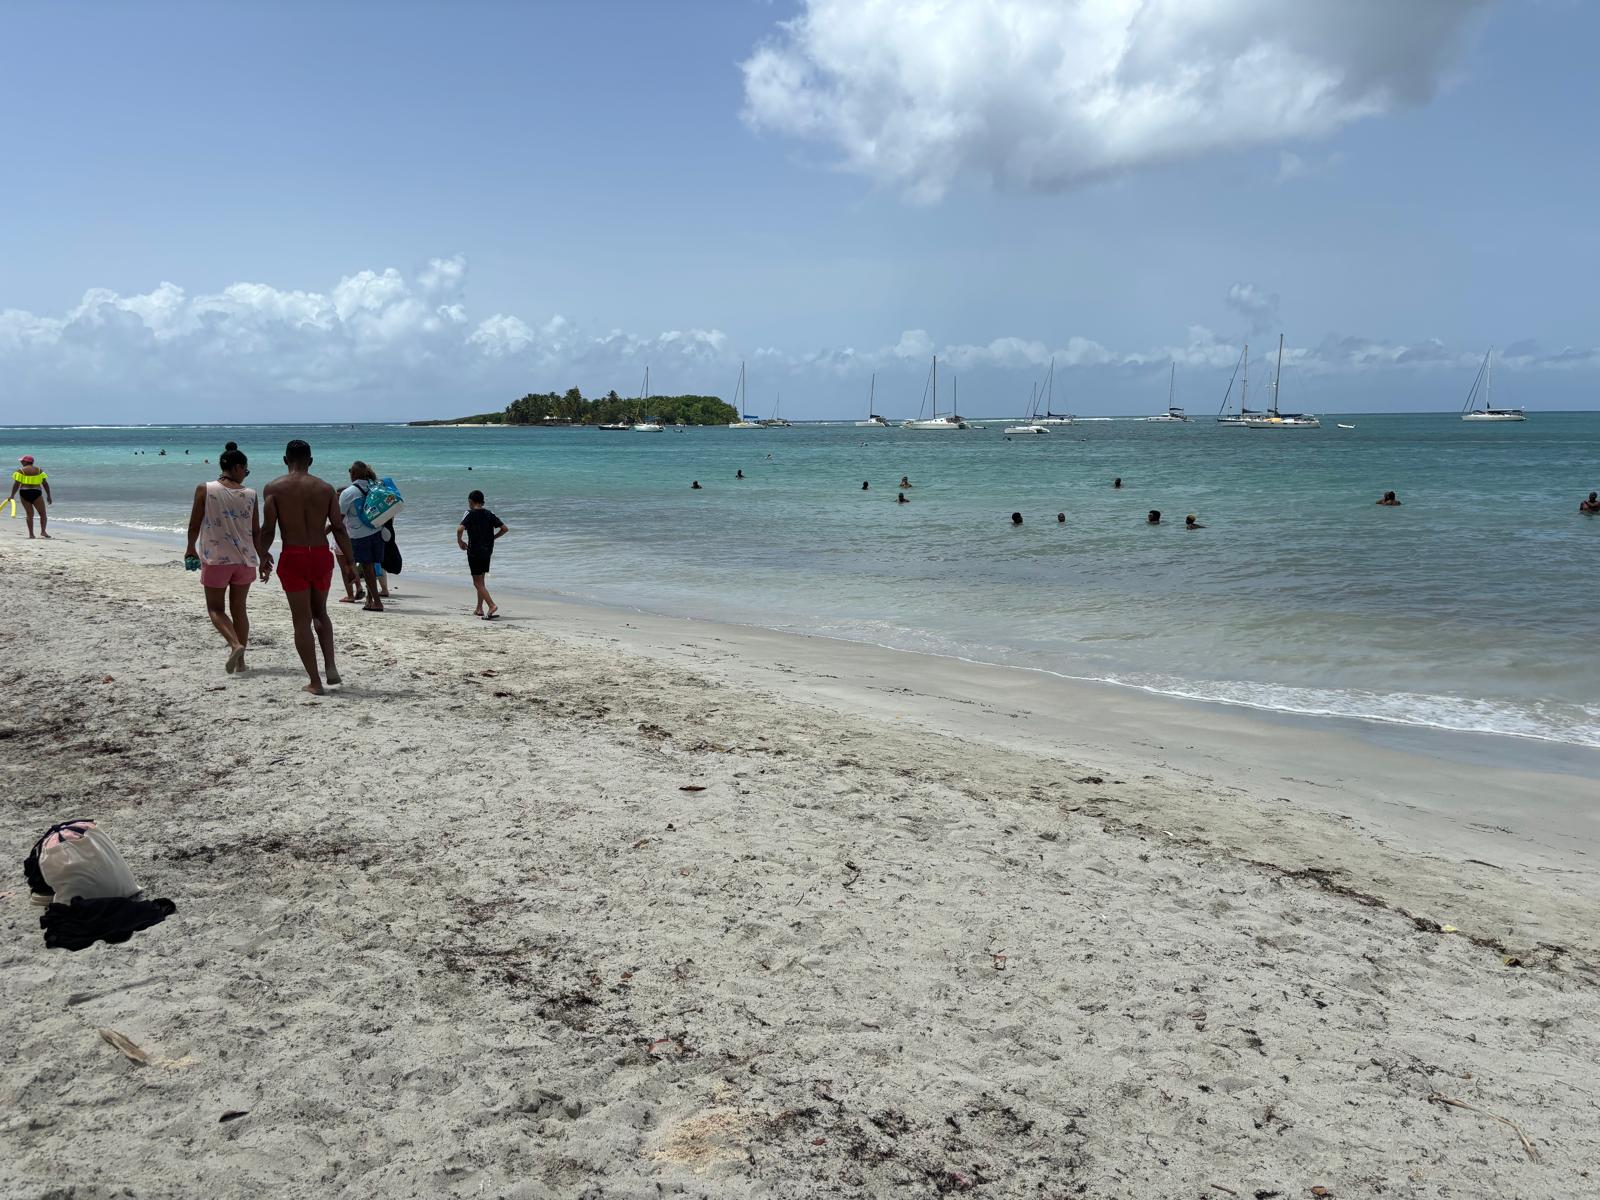     Après de nouvelles analyses, levée de l’interdiction de baignade sur quatre plages du Gosier

